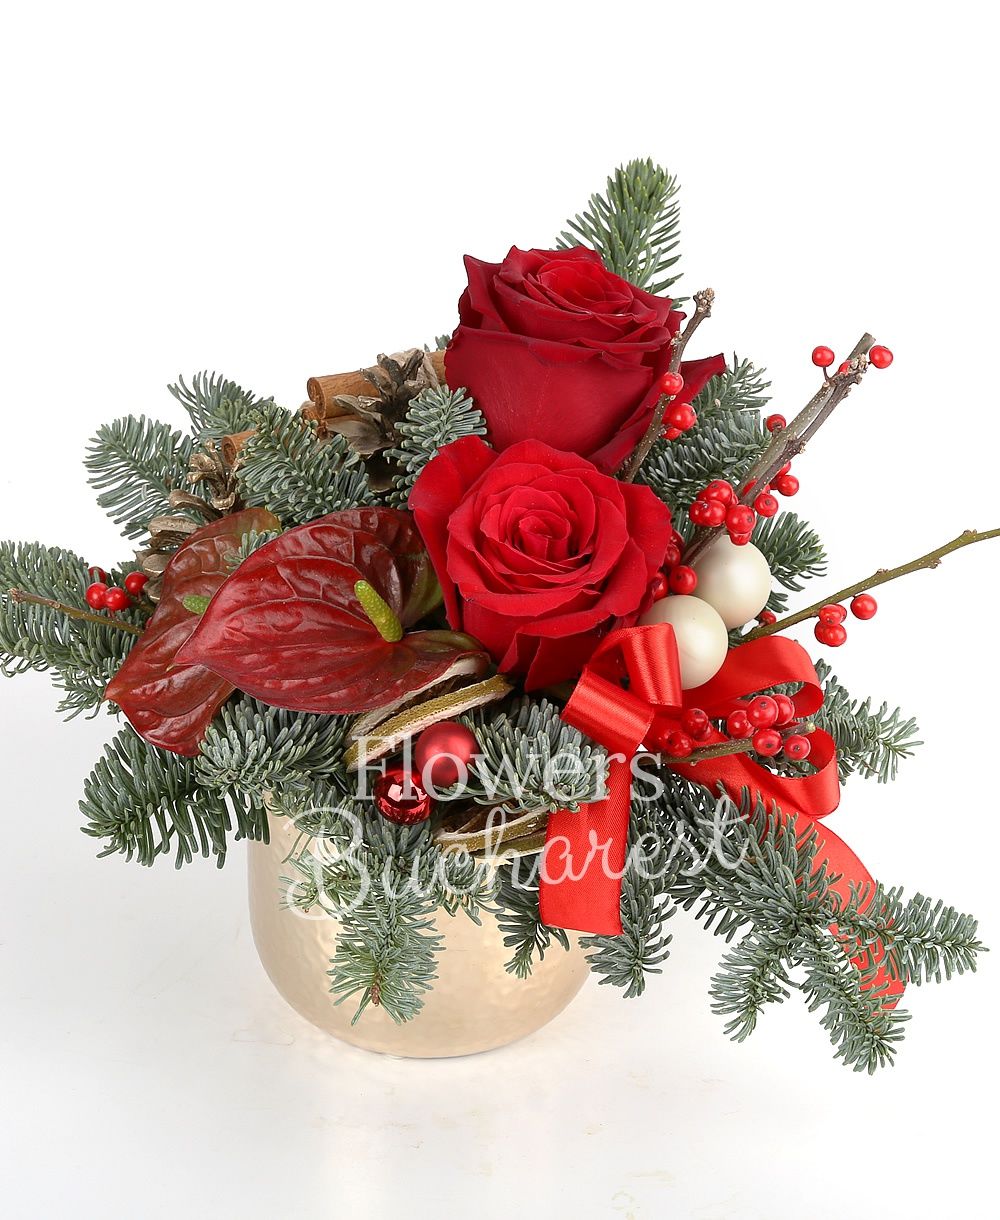 3 red roses, 2 ilex, 2 anthurium, ornaments, vase